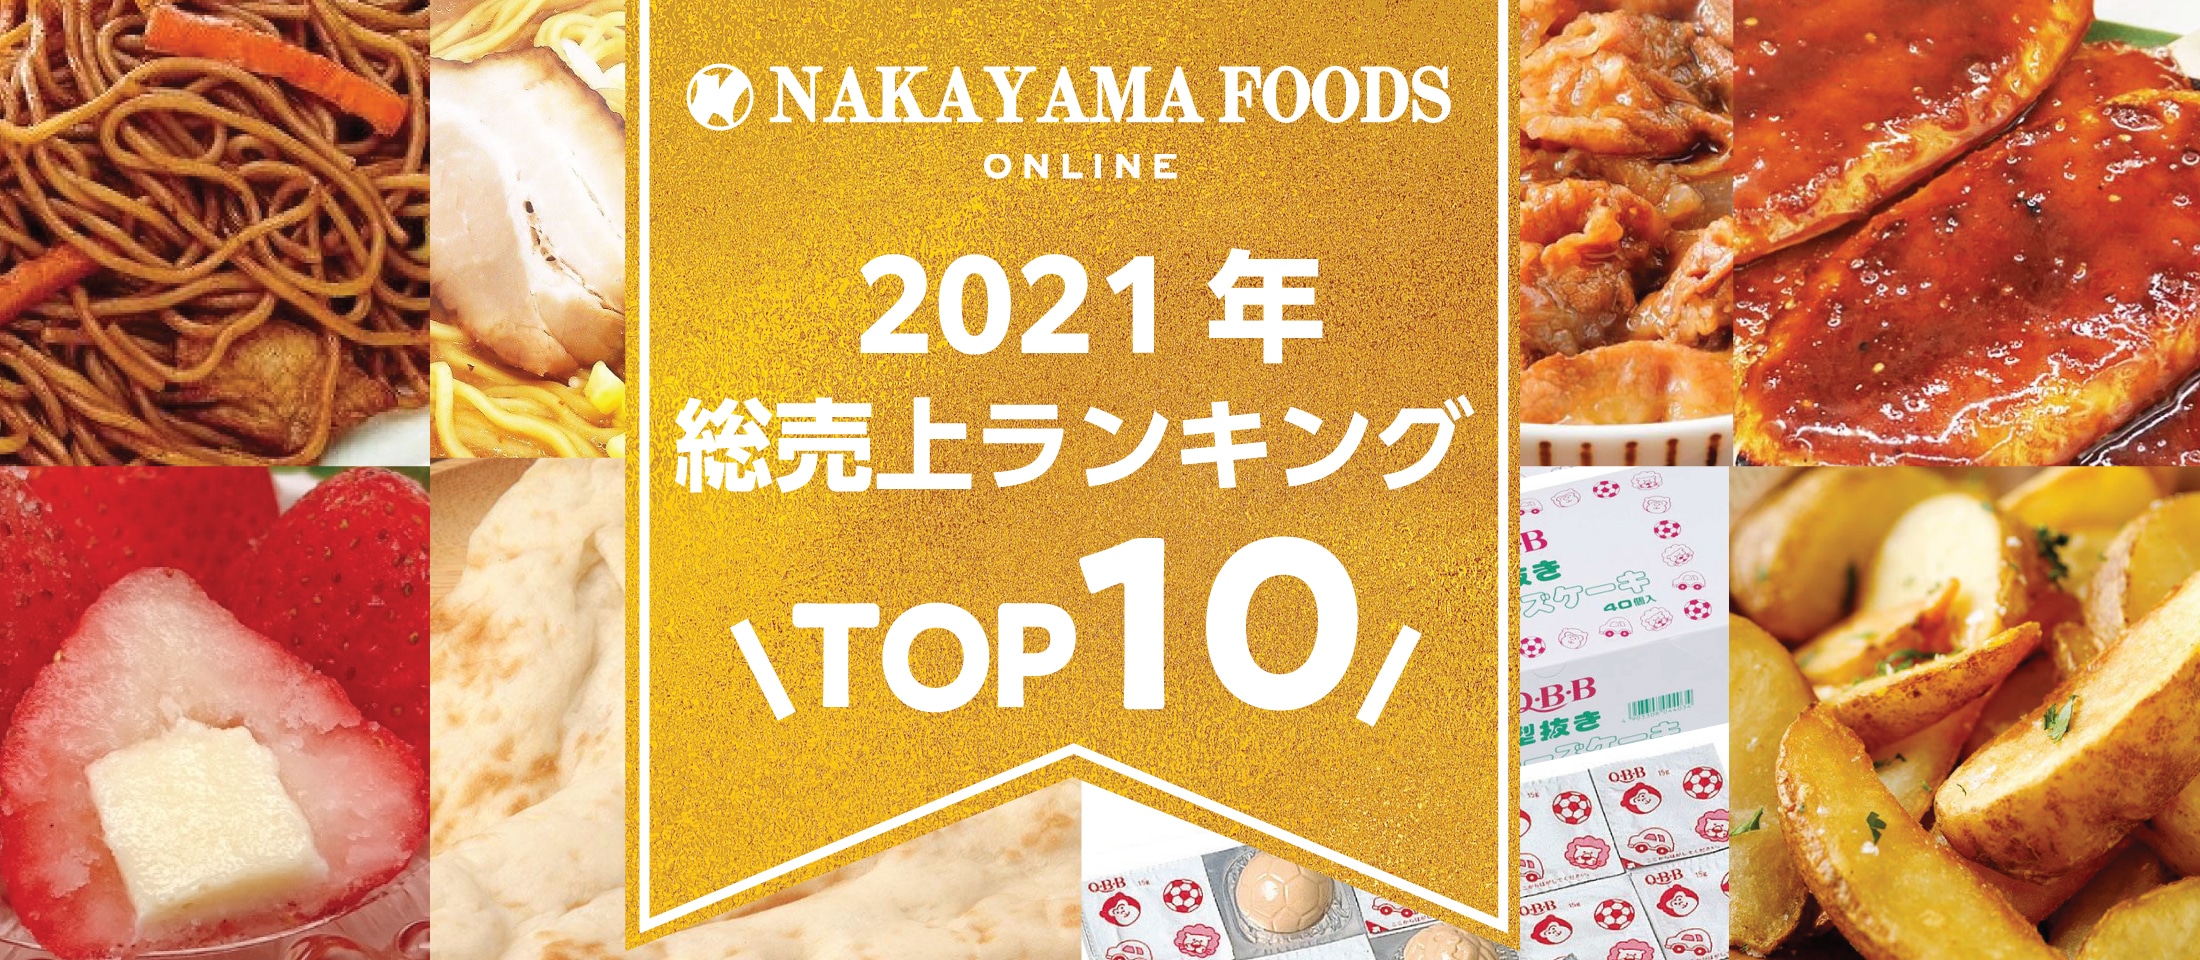 ナカヤマフーズオンライン
2021年総売り上げTOP10 業務用食品・冷凍食品通販 ナカヤマフーズオンライン